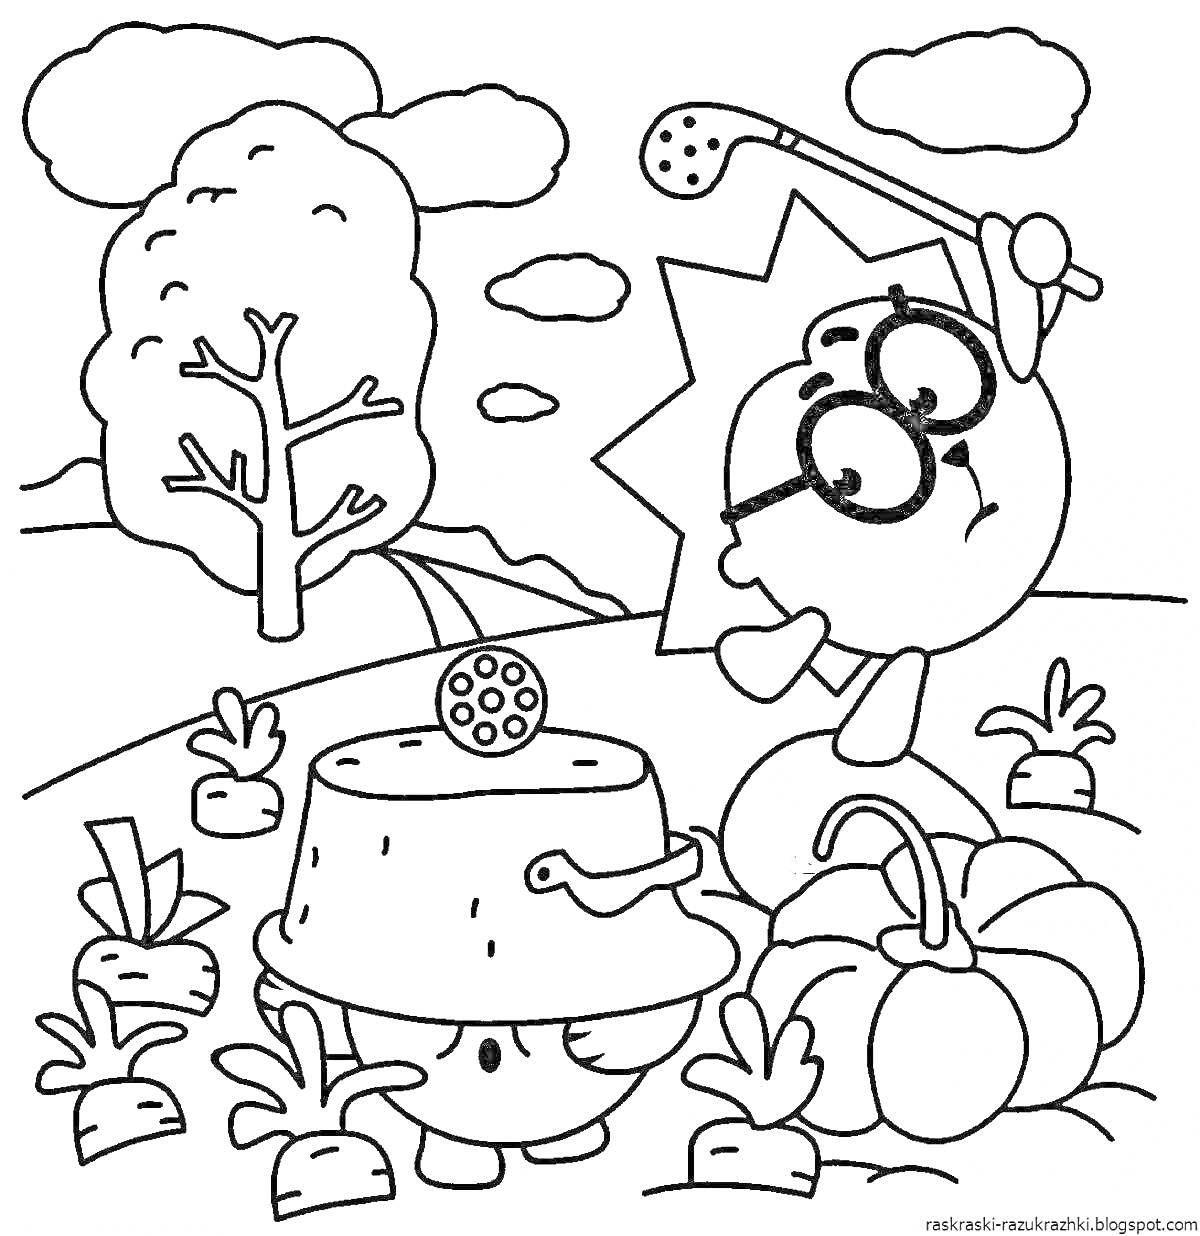 Раскраска Персонажи с очками и ведром на голове среди растений и тыквы, деревья и облака